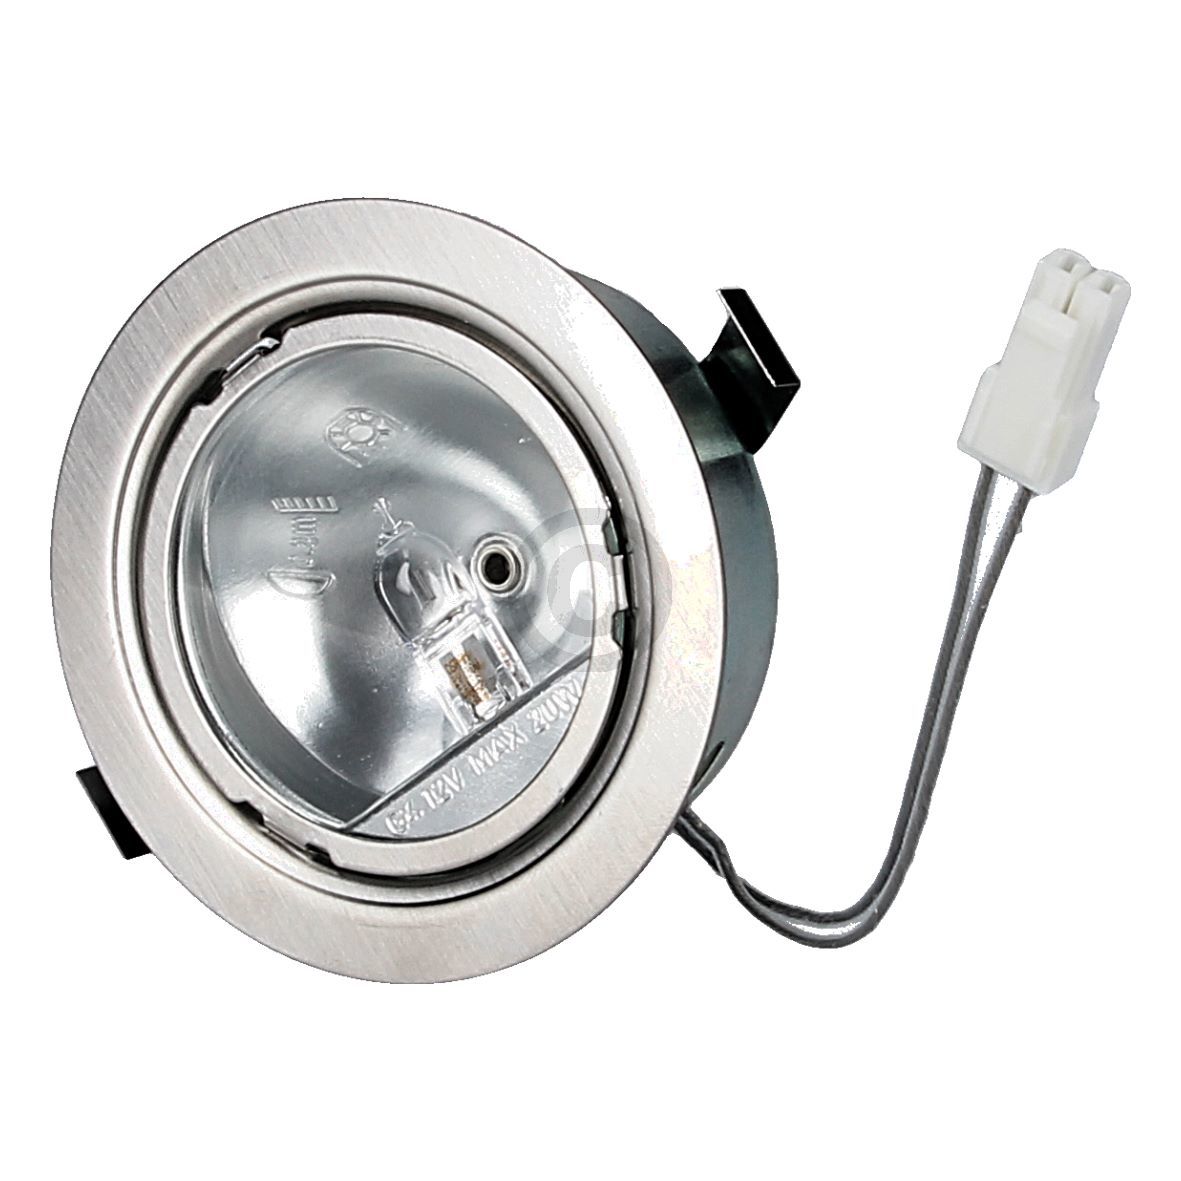 Halogenlampe kompatibel mit NEFF 00621473 20W 12V mit Halter Deckel für Dunstabzugshaube